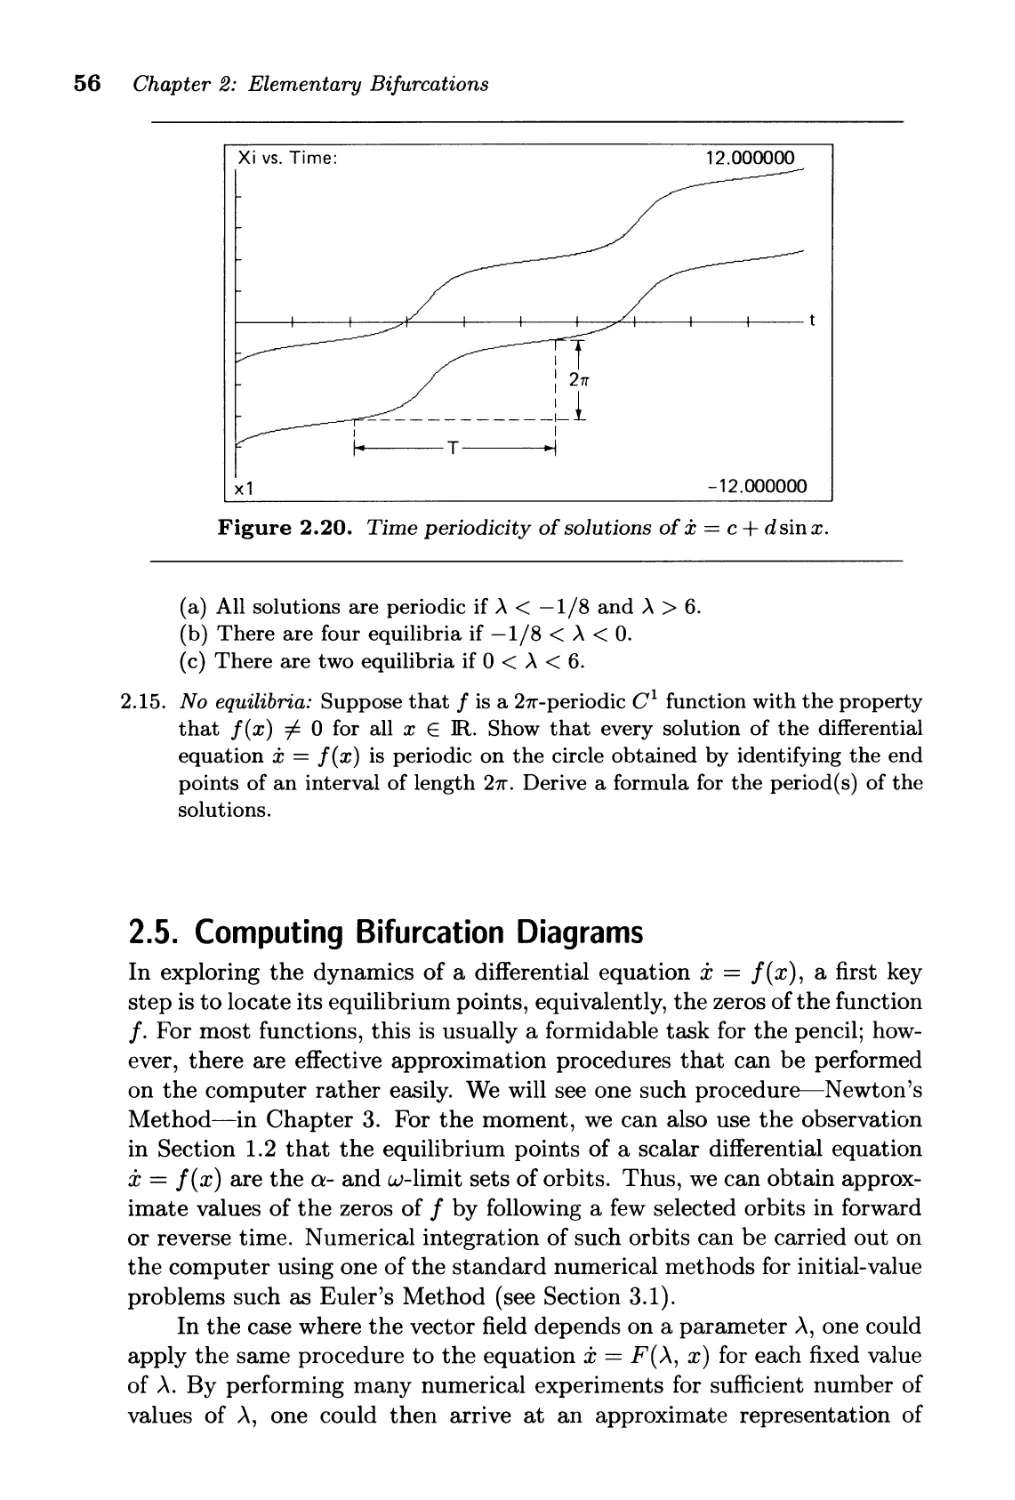 2.5. Computing Bifurcation Diagrams